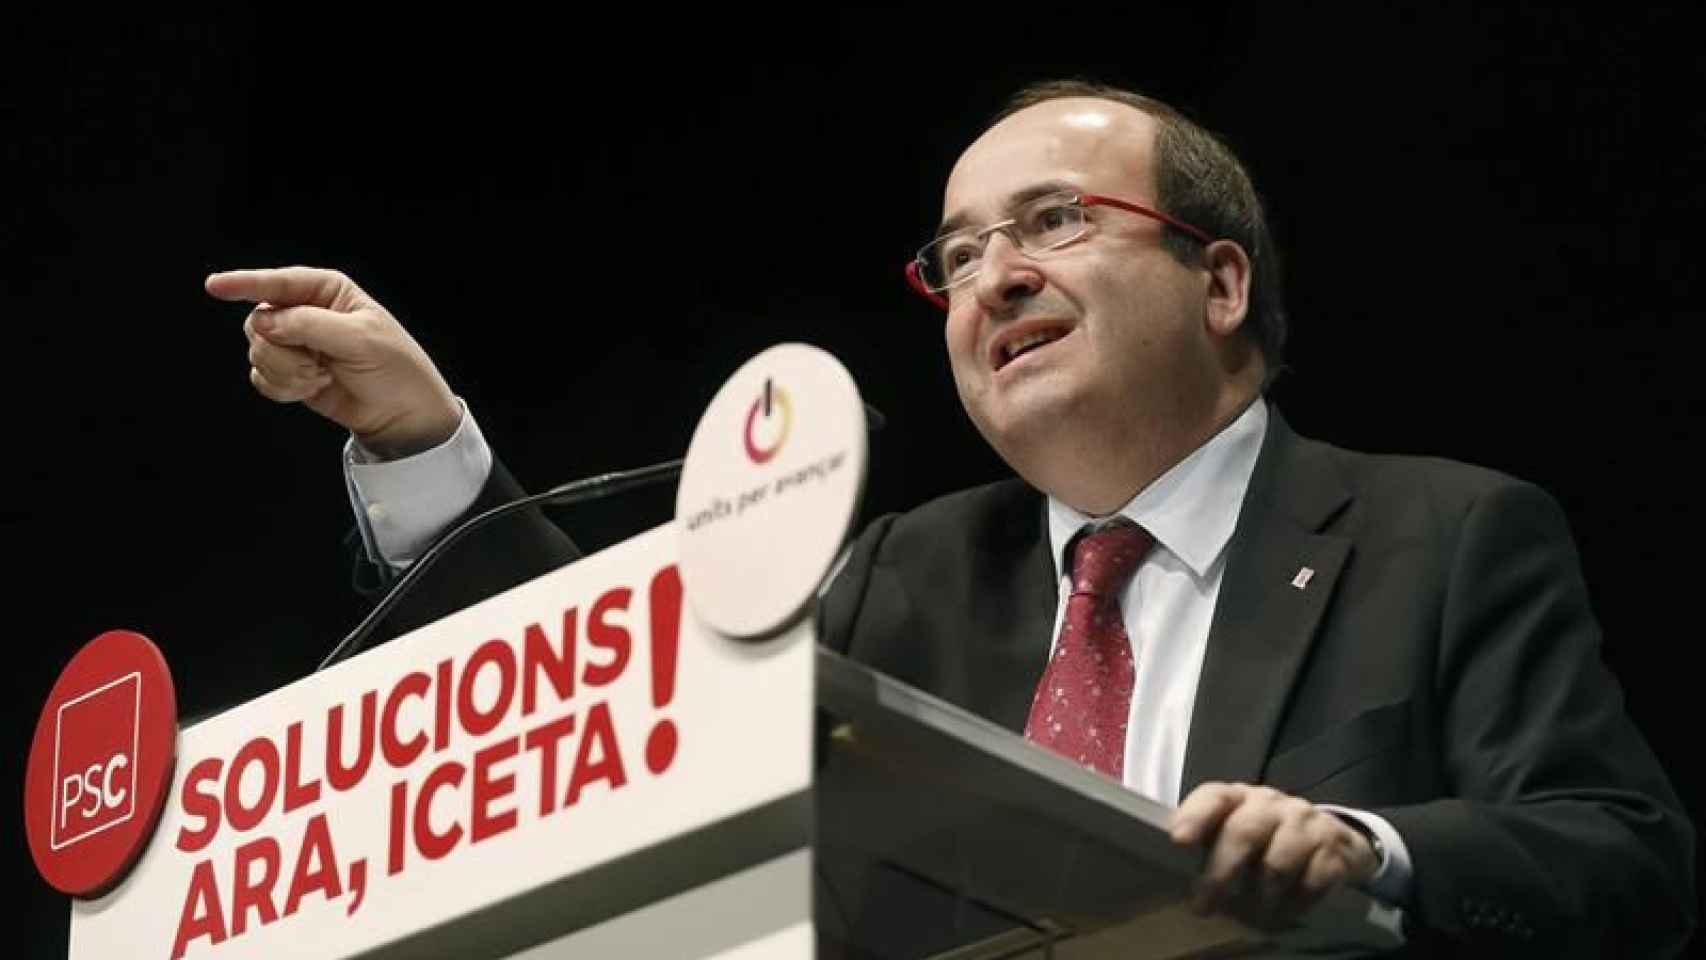 Miquel Iceta, candidato del PSC a la presidencia de la Generalitat, en un mitin el domingo en Lleida / EFE